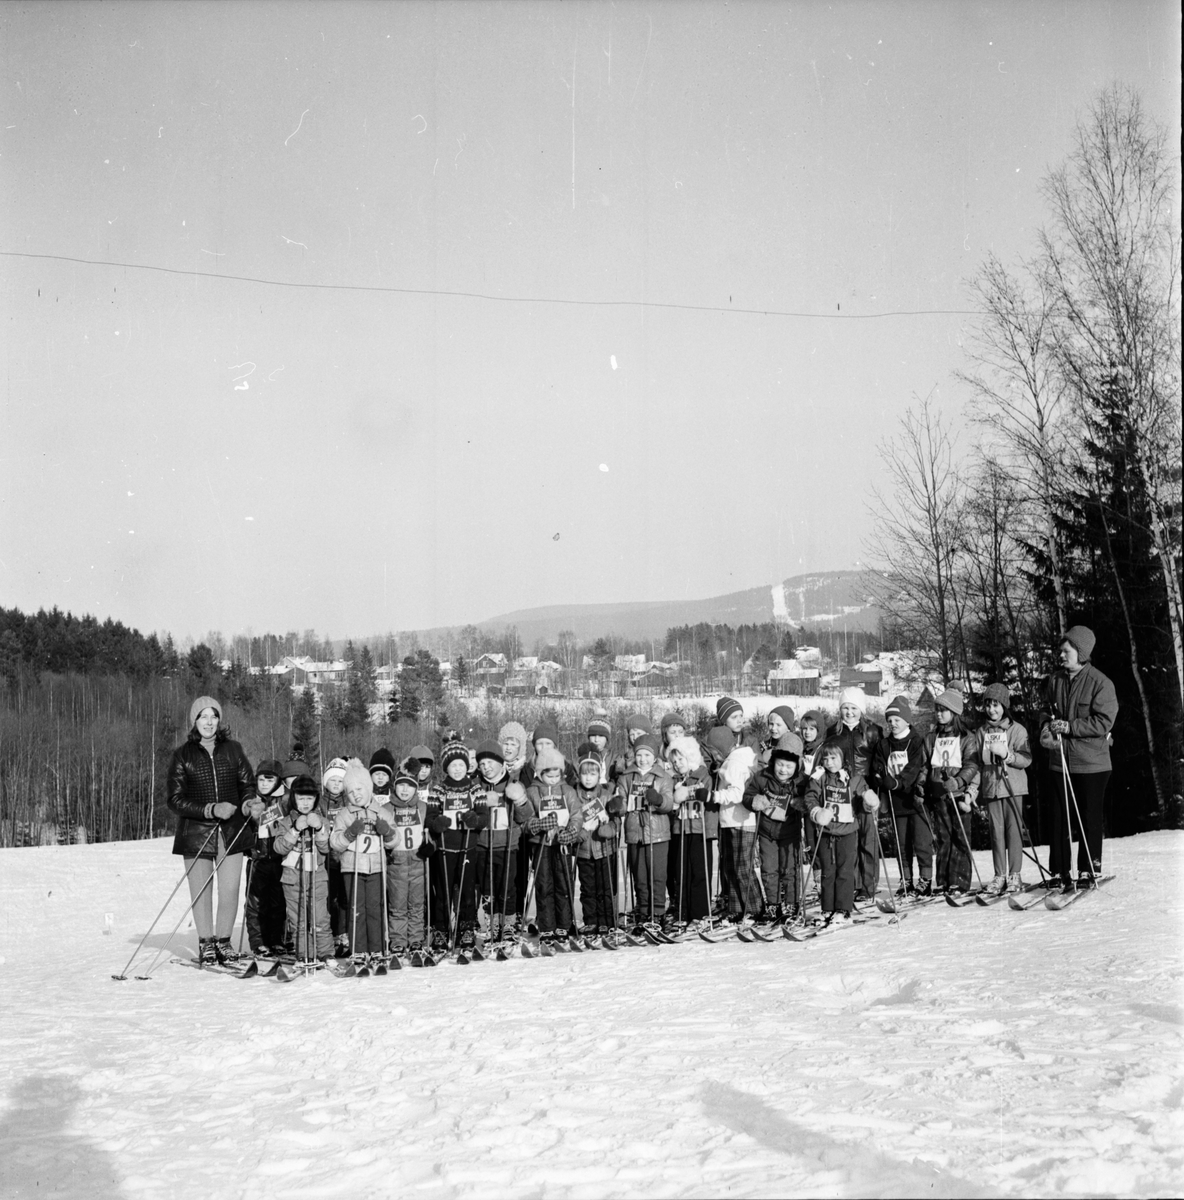 Skidfrämjarnas barnskidskola i Vallsta,
Mars 1972